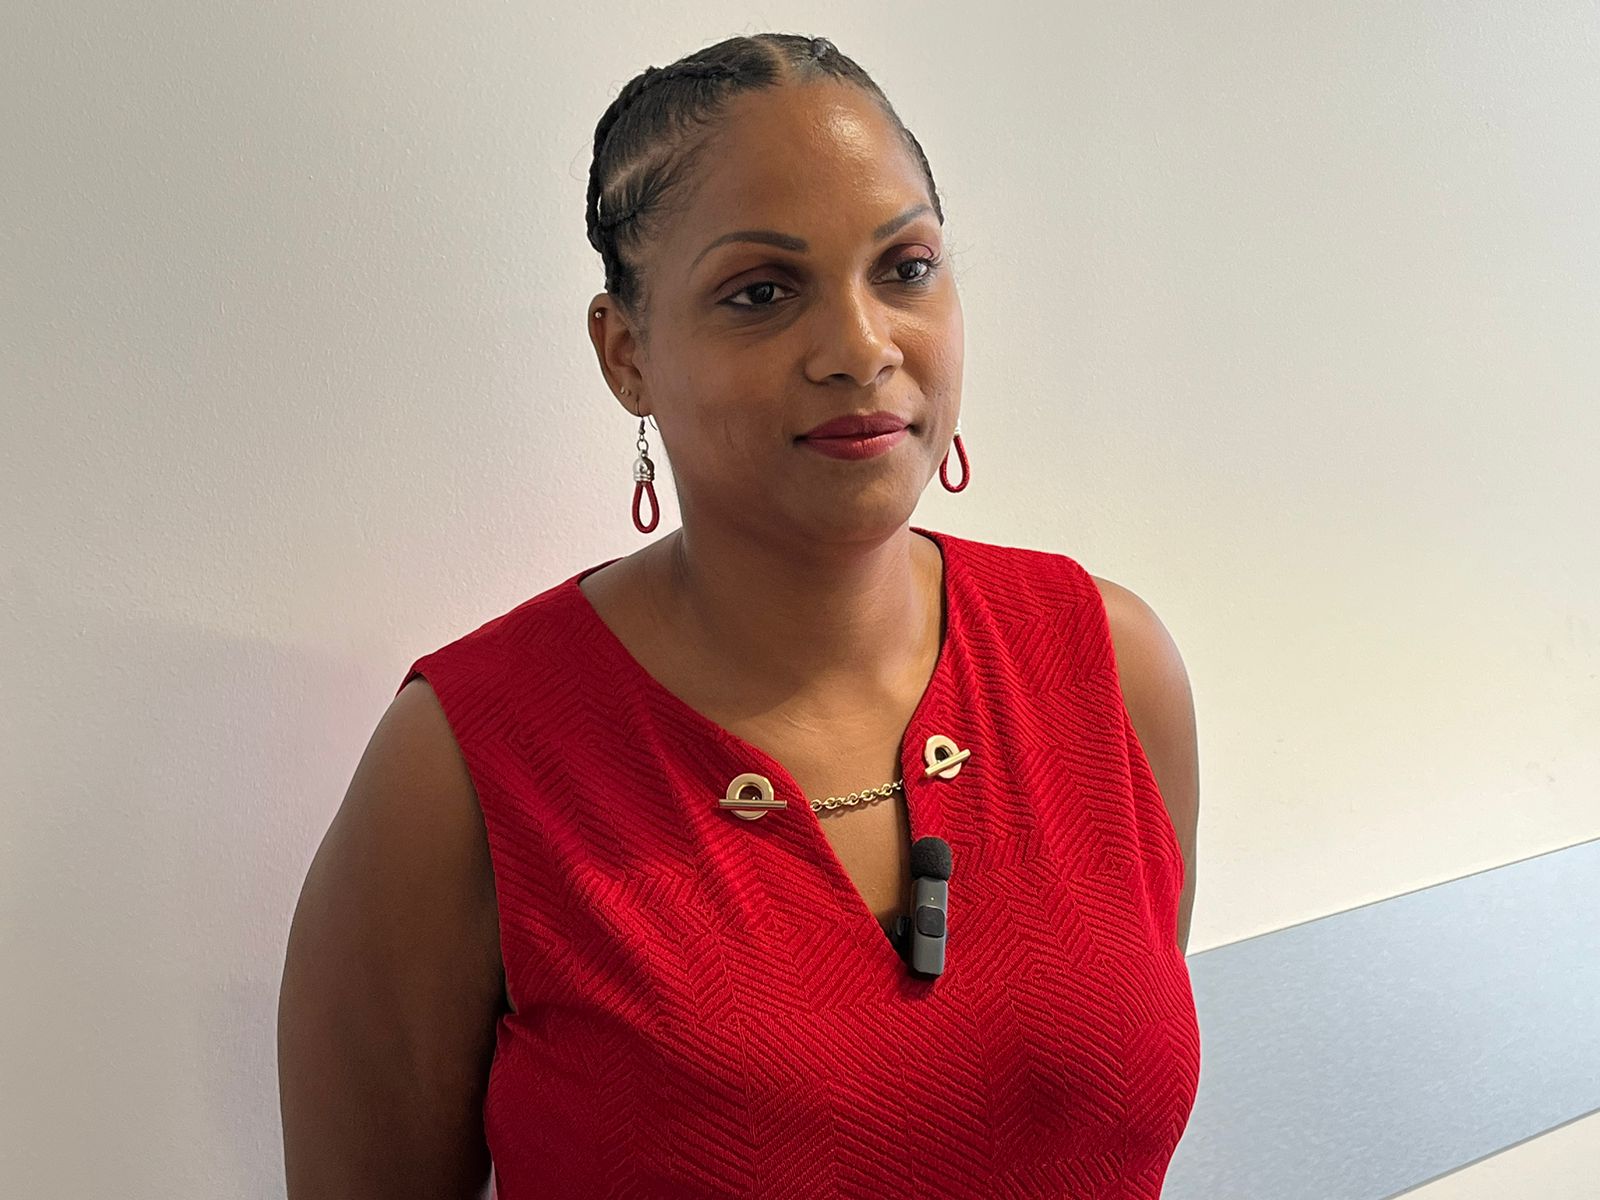     Valérie Samuel-Césarus, nouvelle présidente du Comité du Tourisme des îles de Guadeloupe (CTIG)

